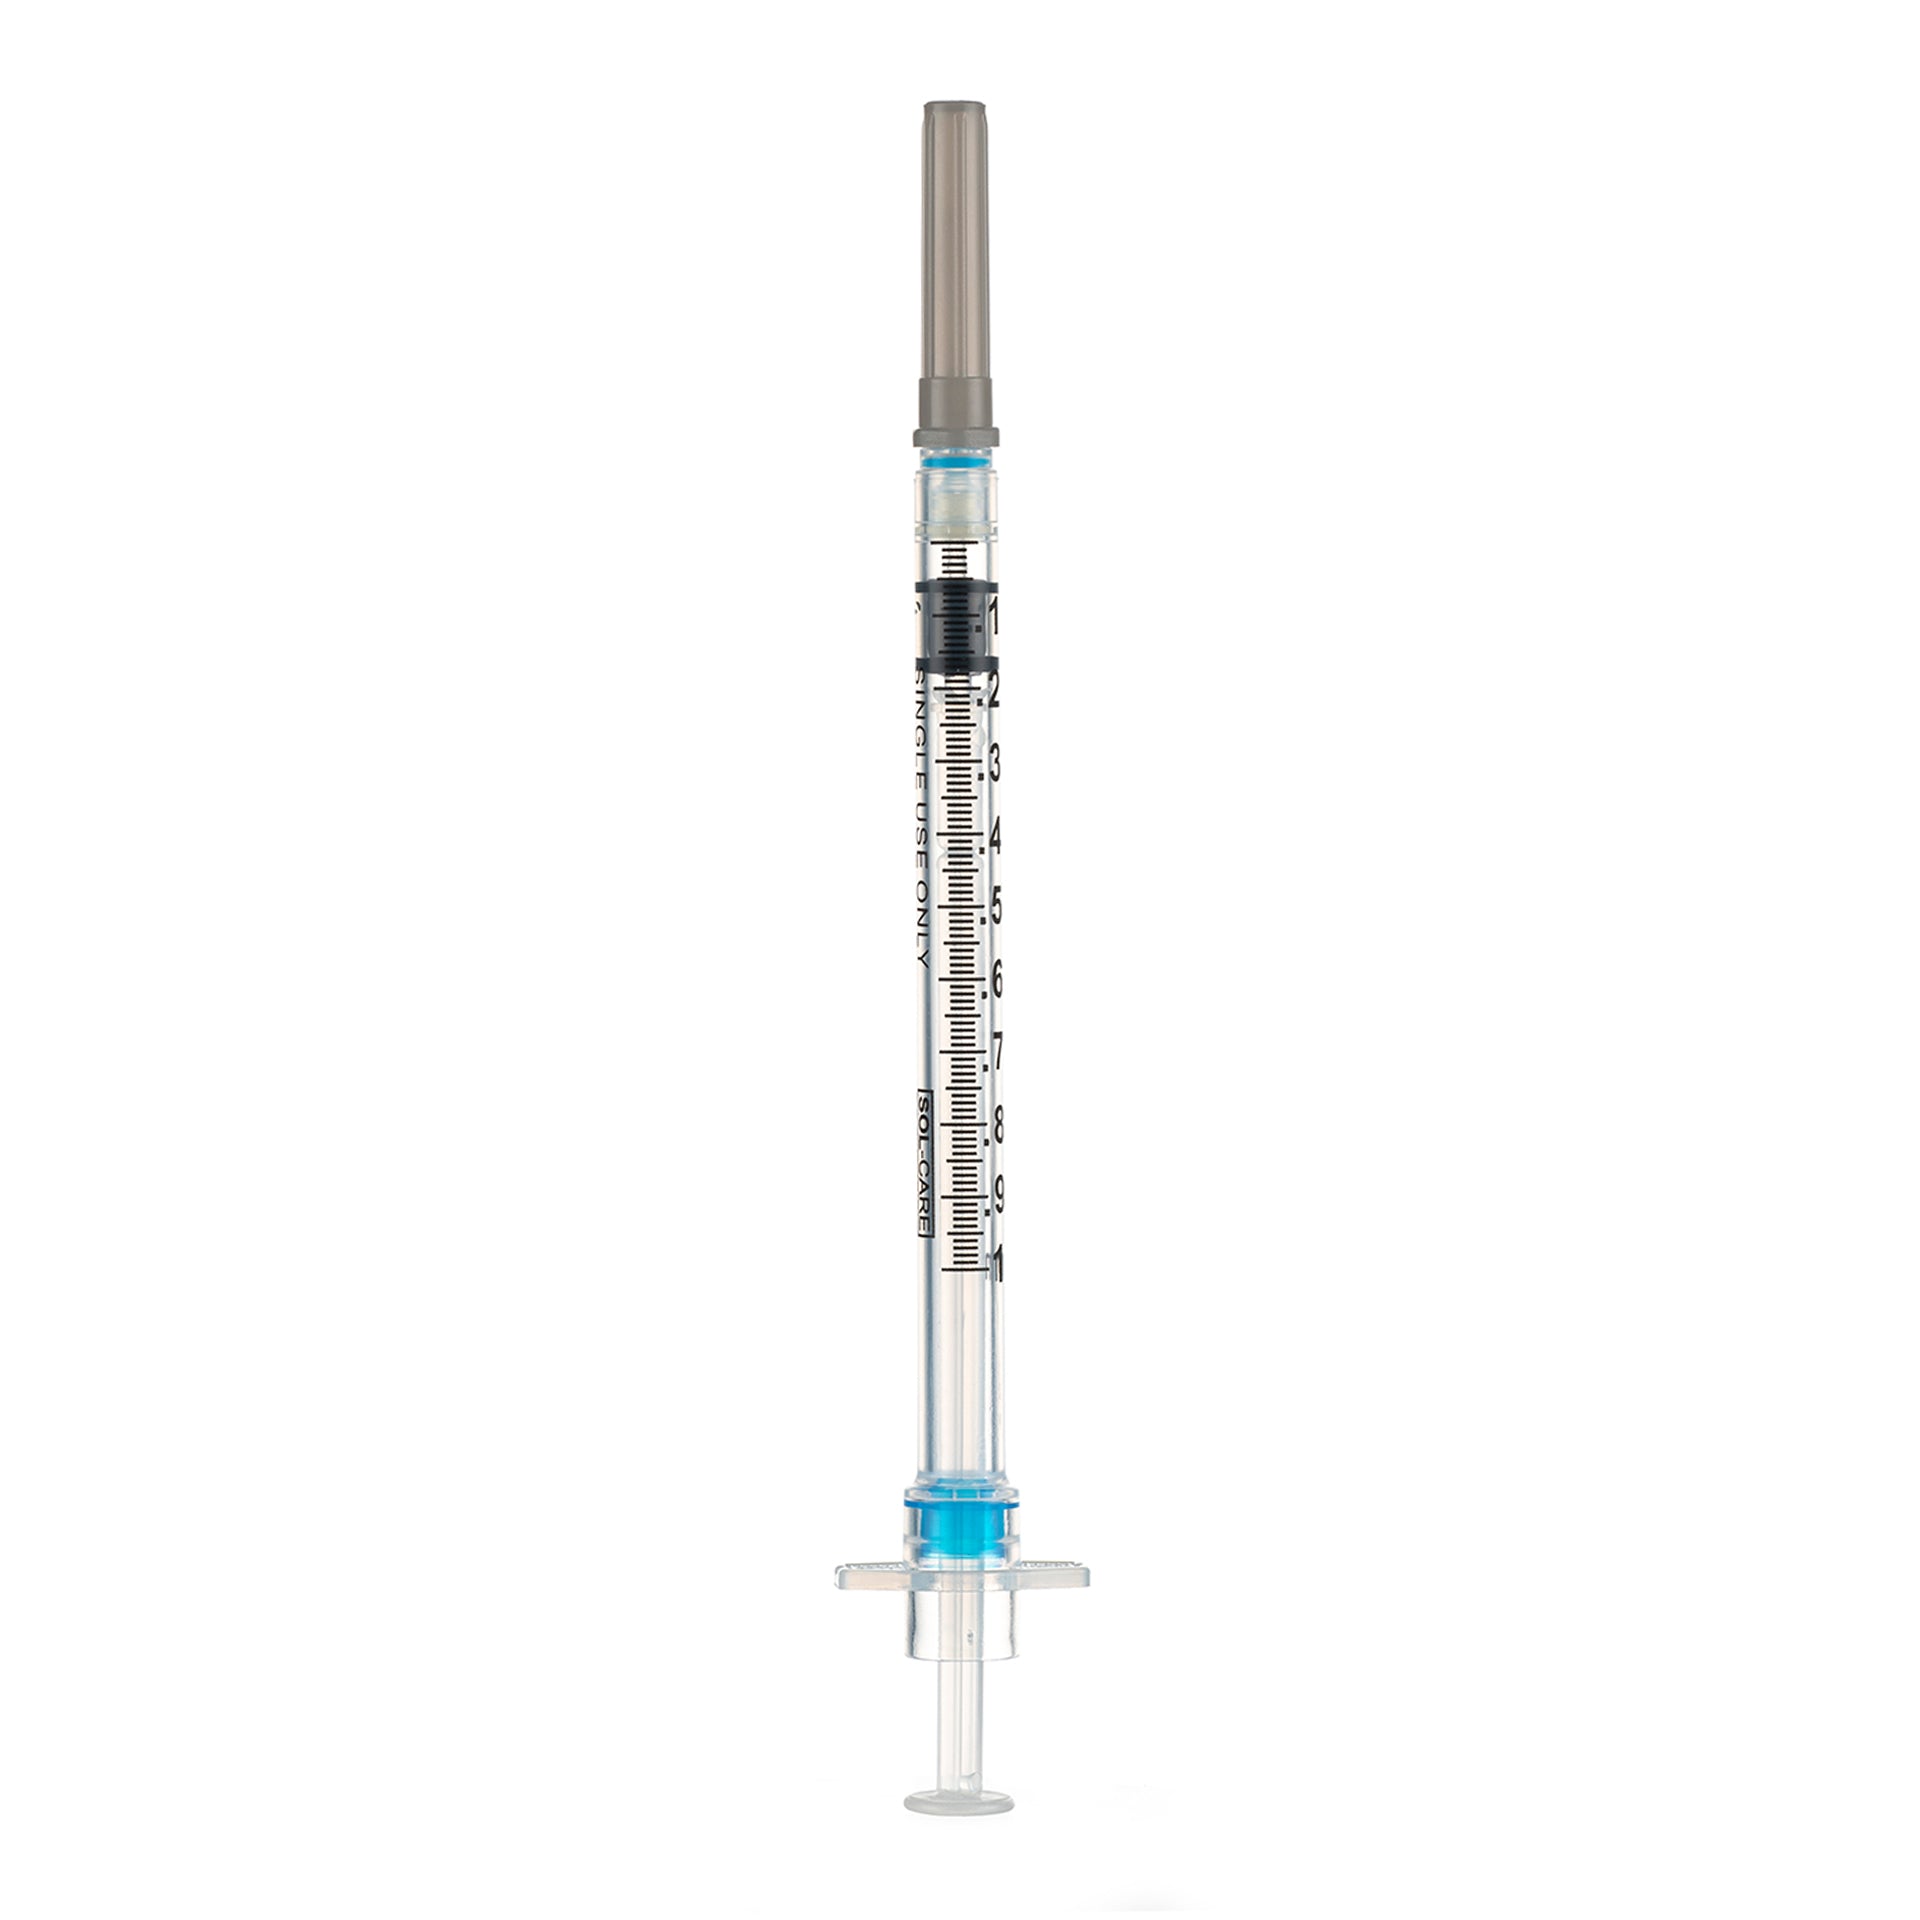 BX/100 - SOL-CARE 0.5ml TB Safety Syringe w/Fixed Needle 27G*1/2